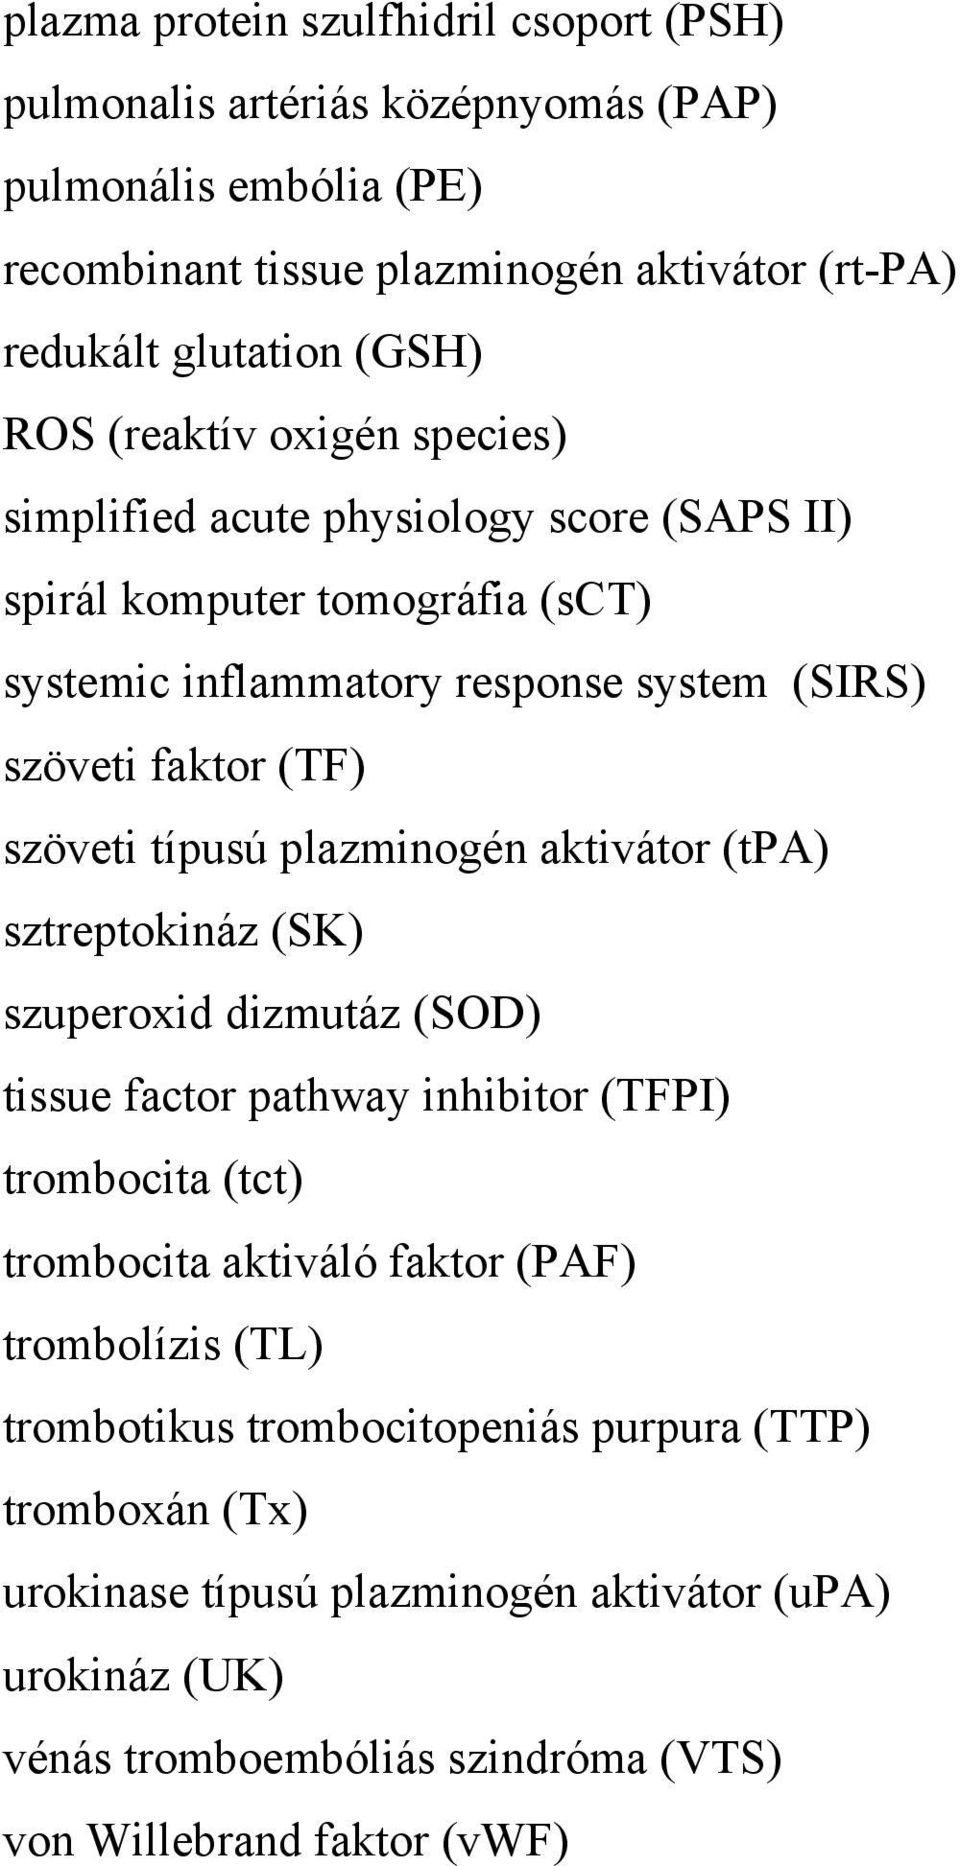 típusú plazminogén aktivátor (tpa) sztreptokináz (SK) szuperoxid dizmutáz (SOD) tissue factor pathway inhibitor (TFPI) trombocita (tct) trombocita aktiváló faktor (PAF) trombolízis